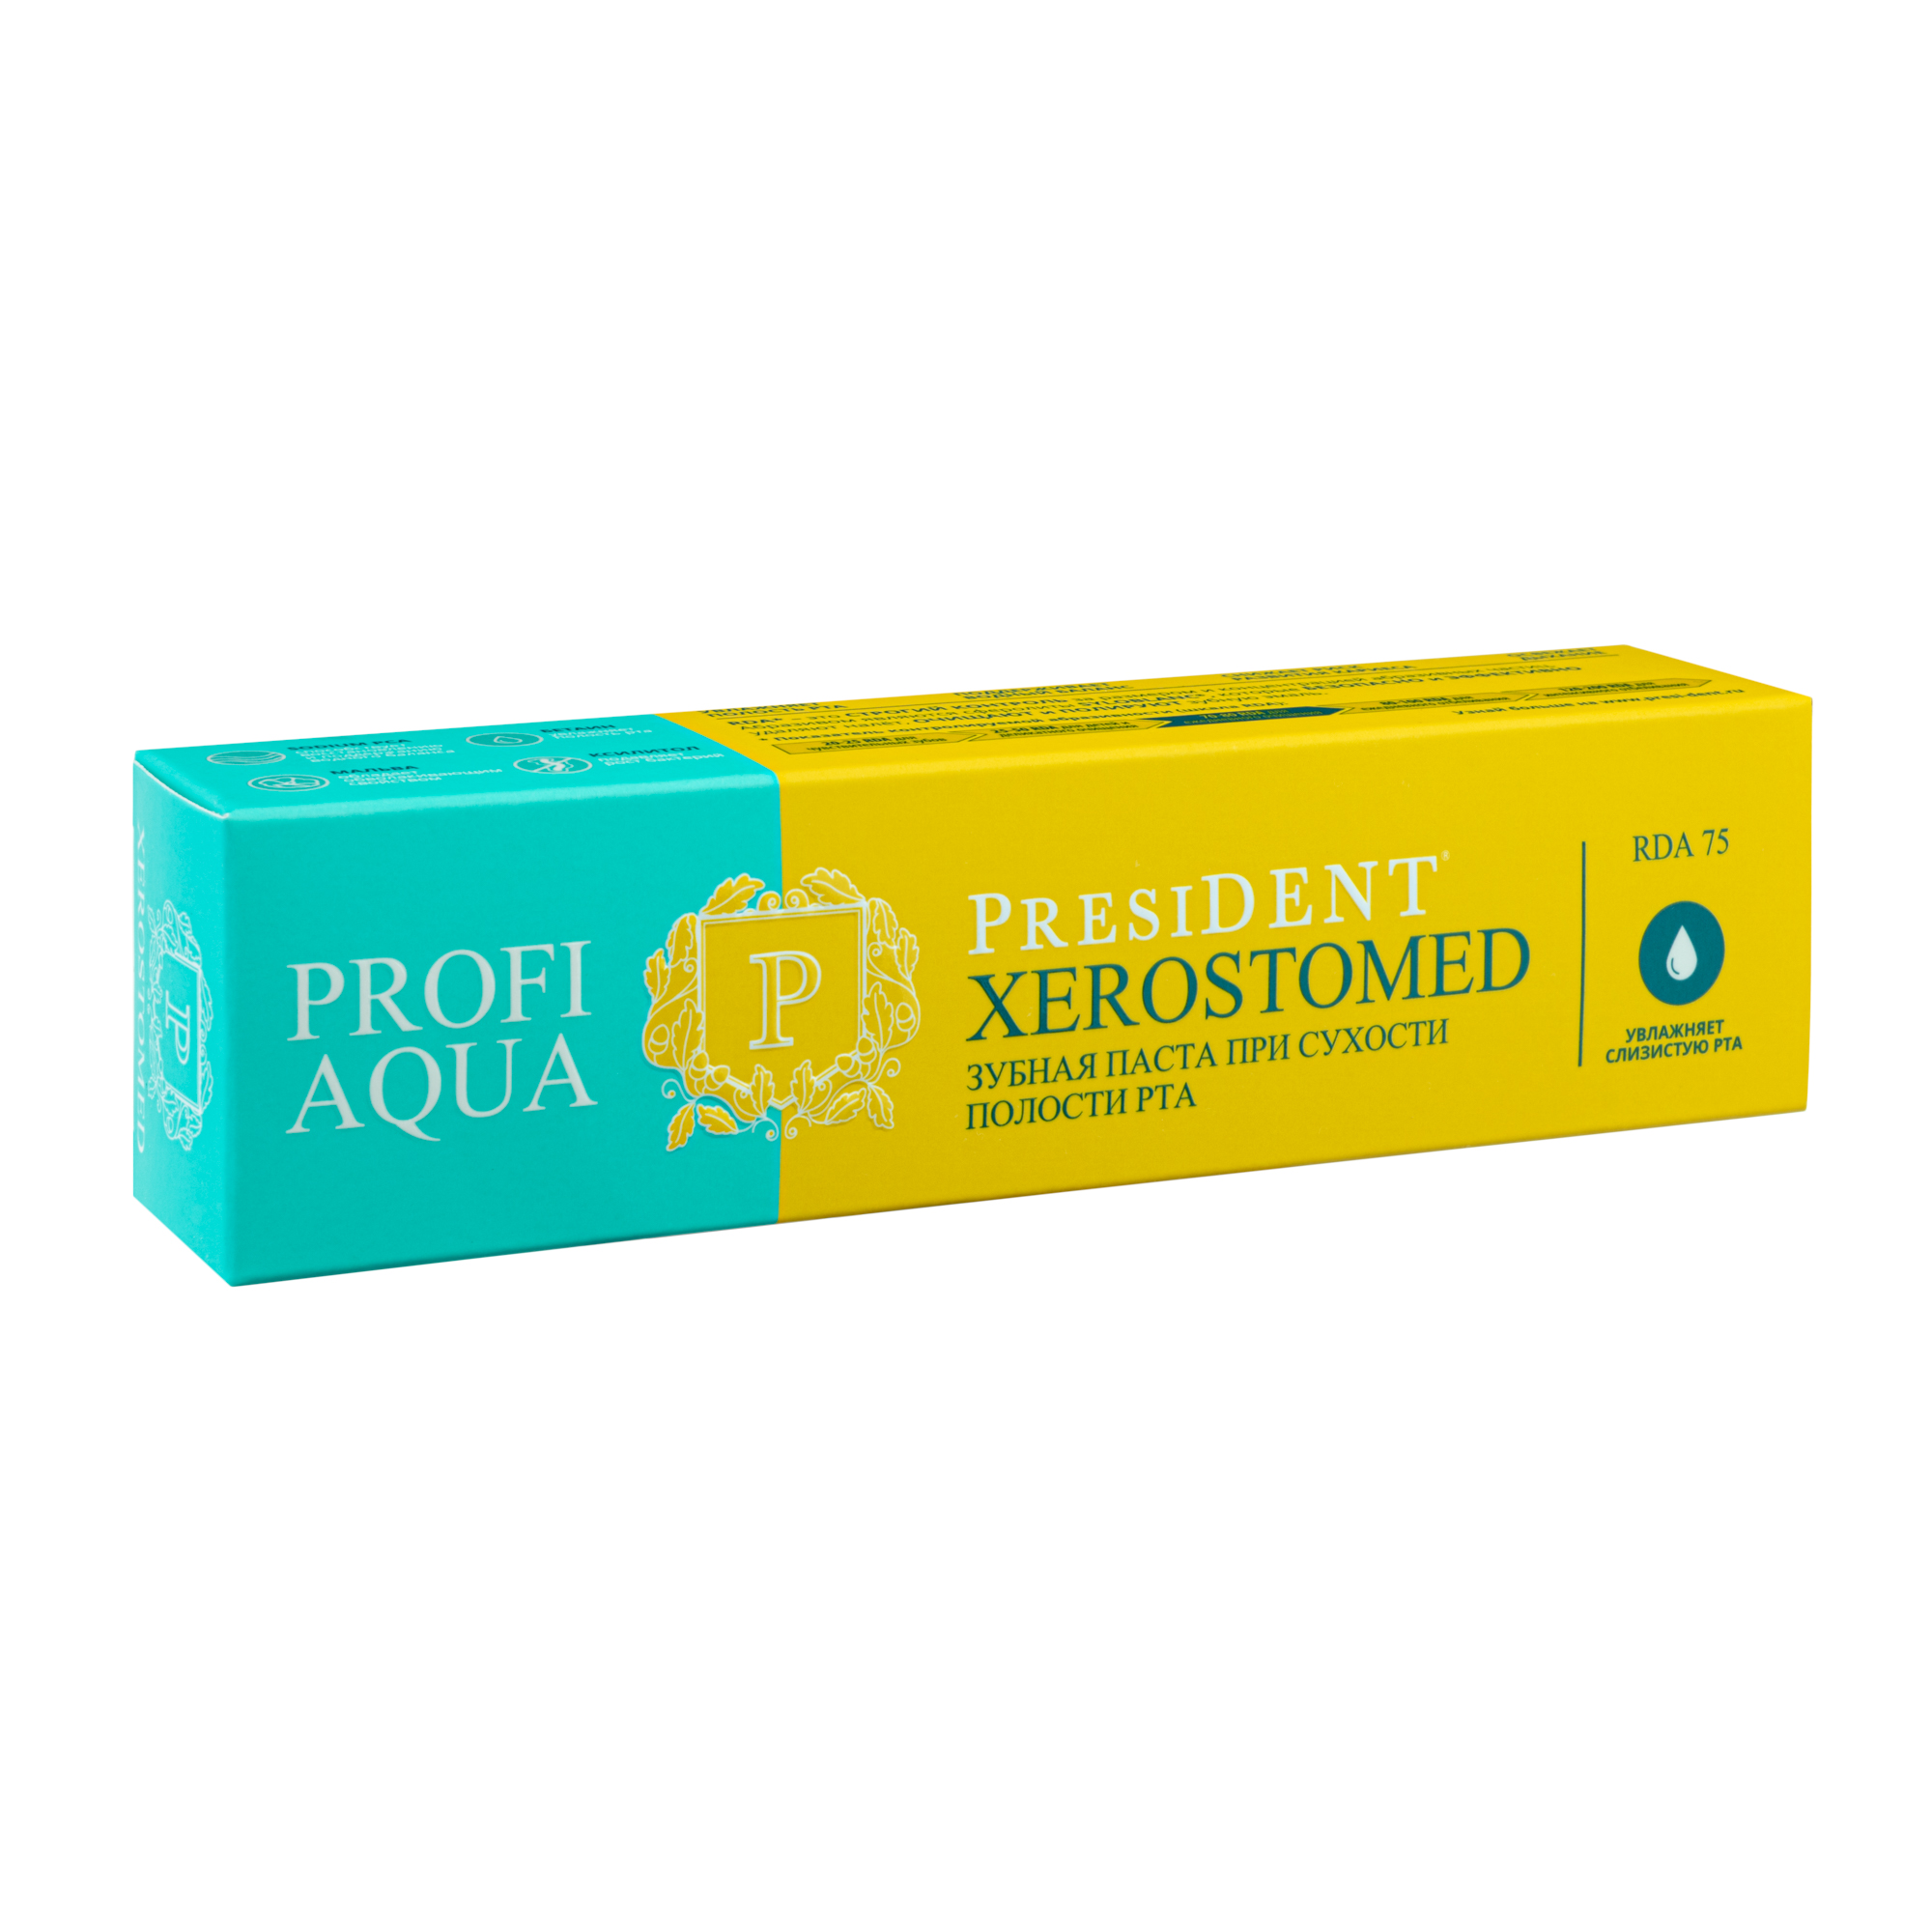 Зубная паста PRESIDENT® PROFI AQUA "XEROSTOMED" (RDA 75), 50 мл